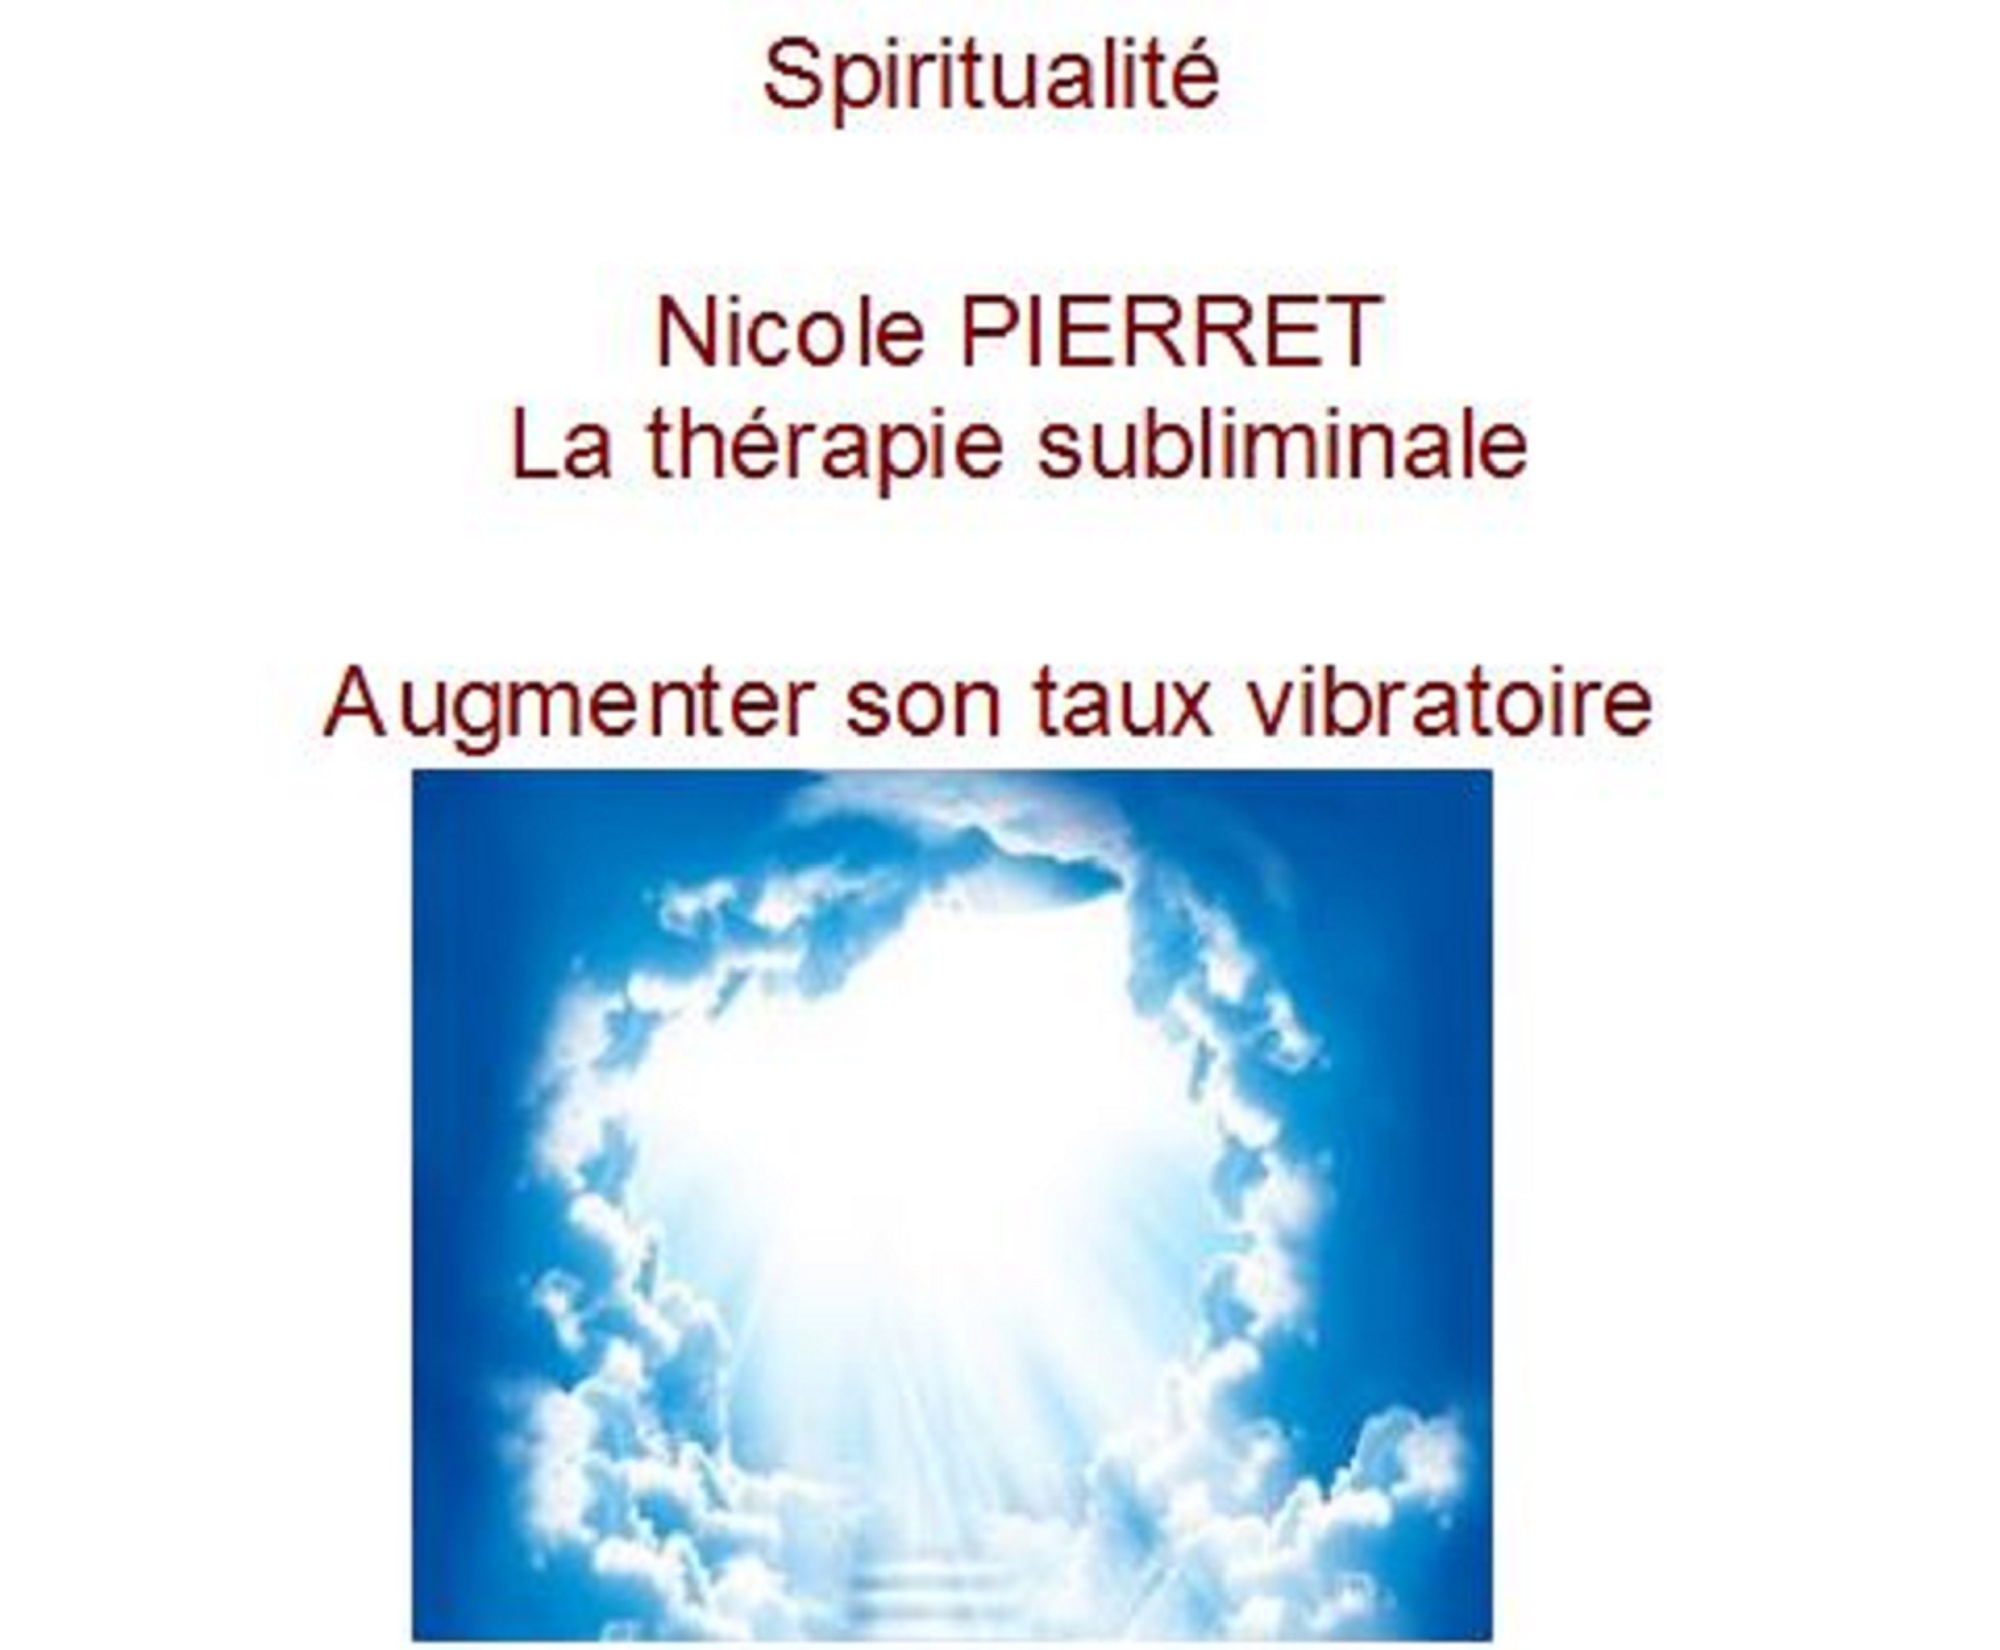 spiritualité thérapie subliminale nicole pierret.JPG